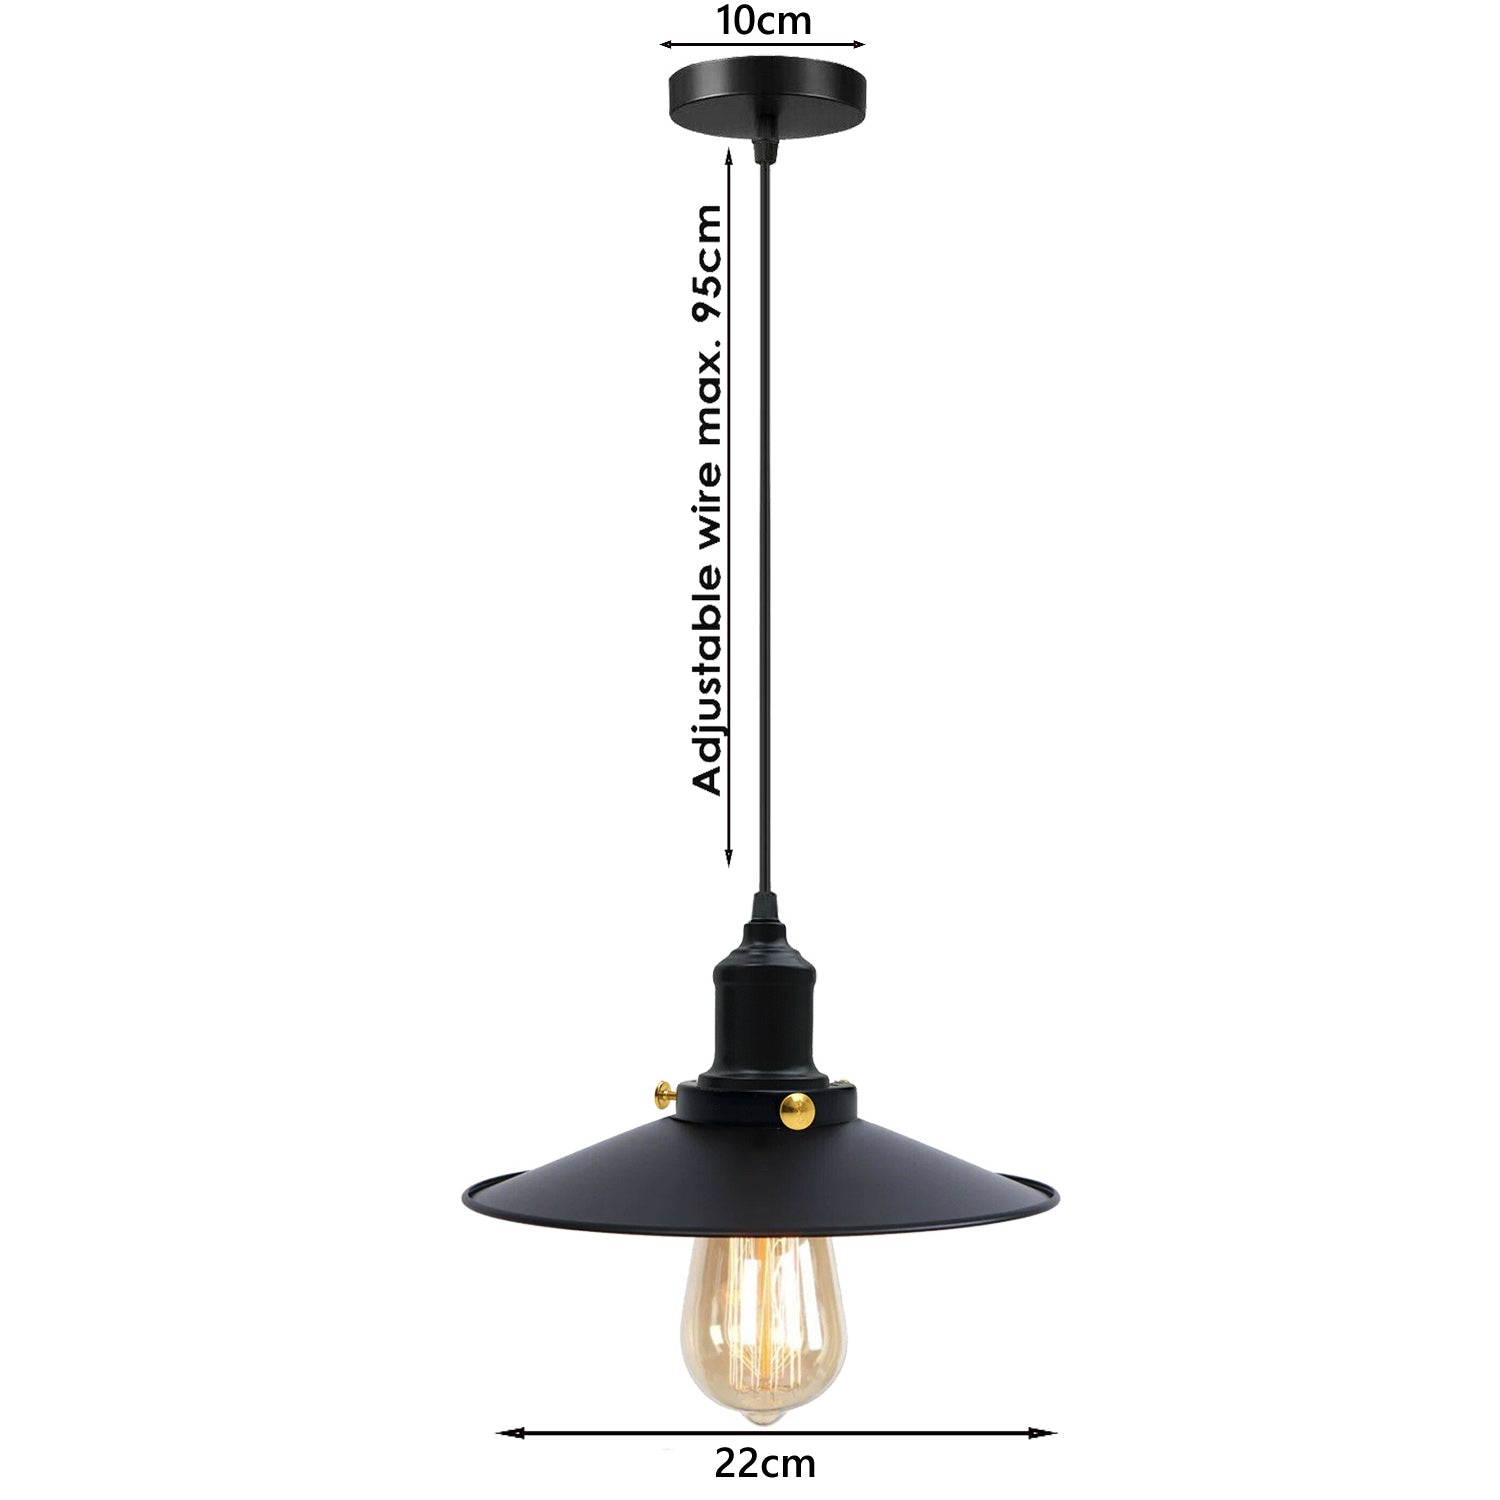 Schwarz-Vintage Hängelampe Retro Industrie Design Pendelleuchte – Leuchte Deckenlampe